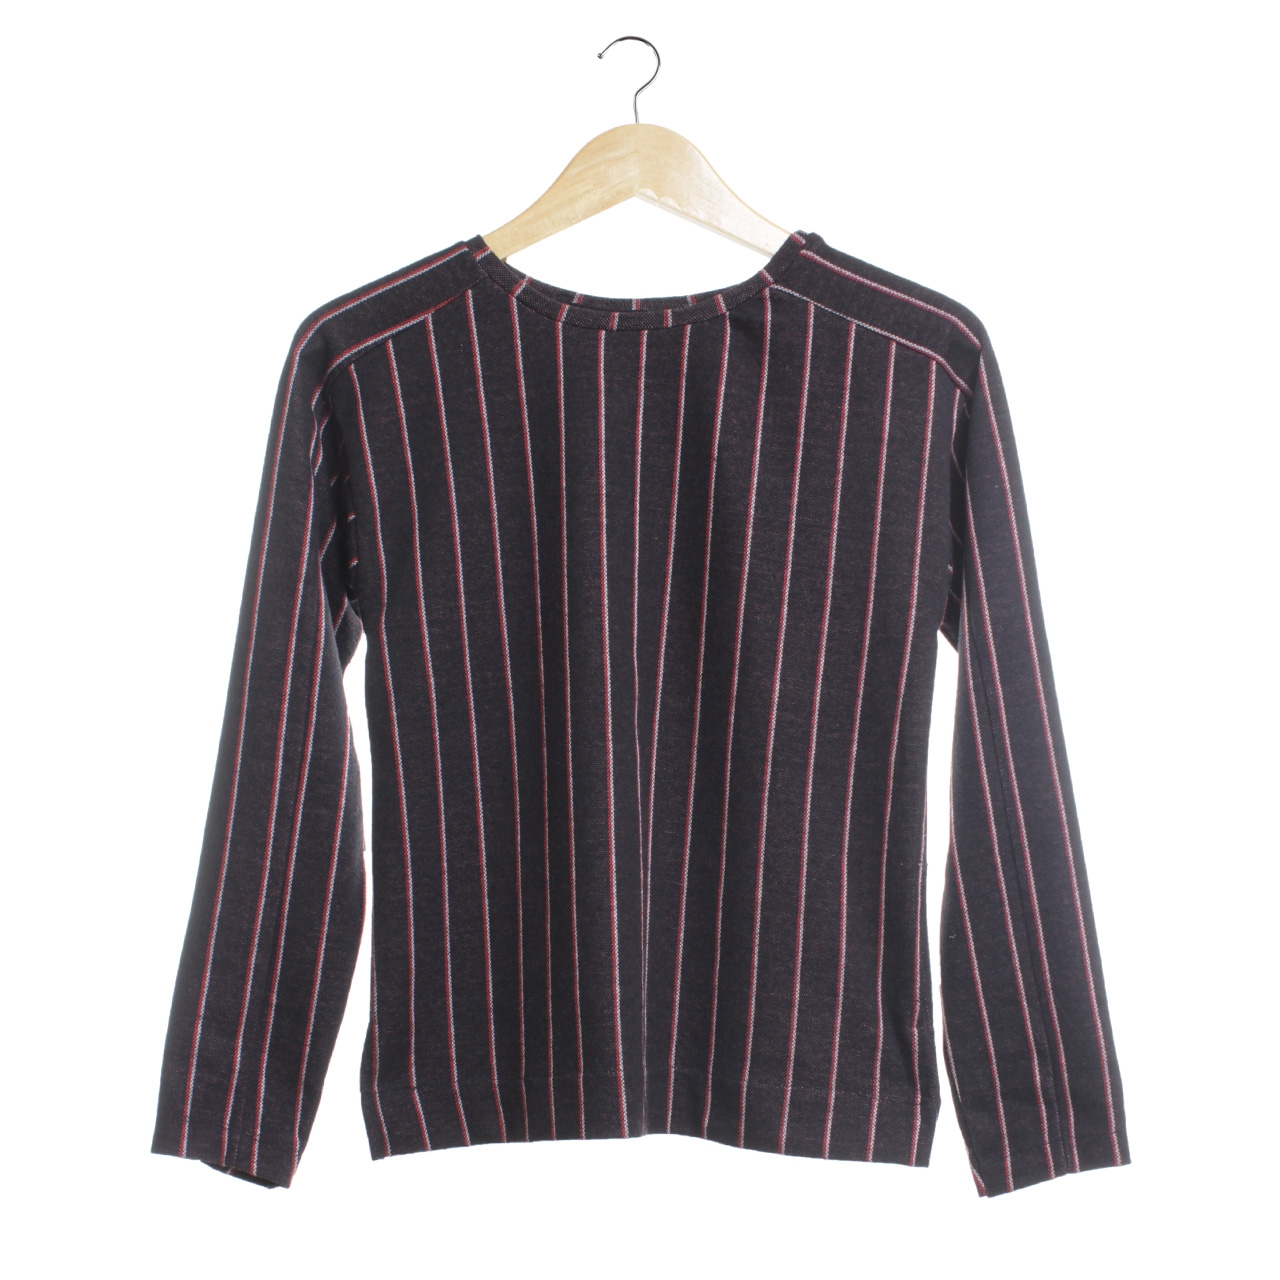 Zara Black Striped Blouse